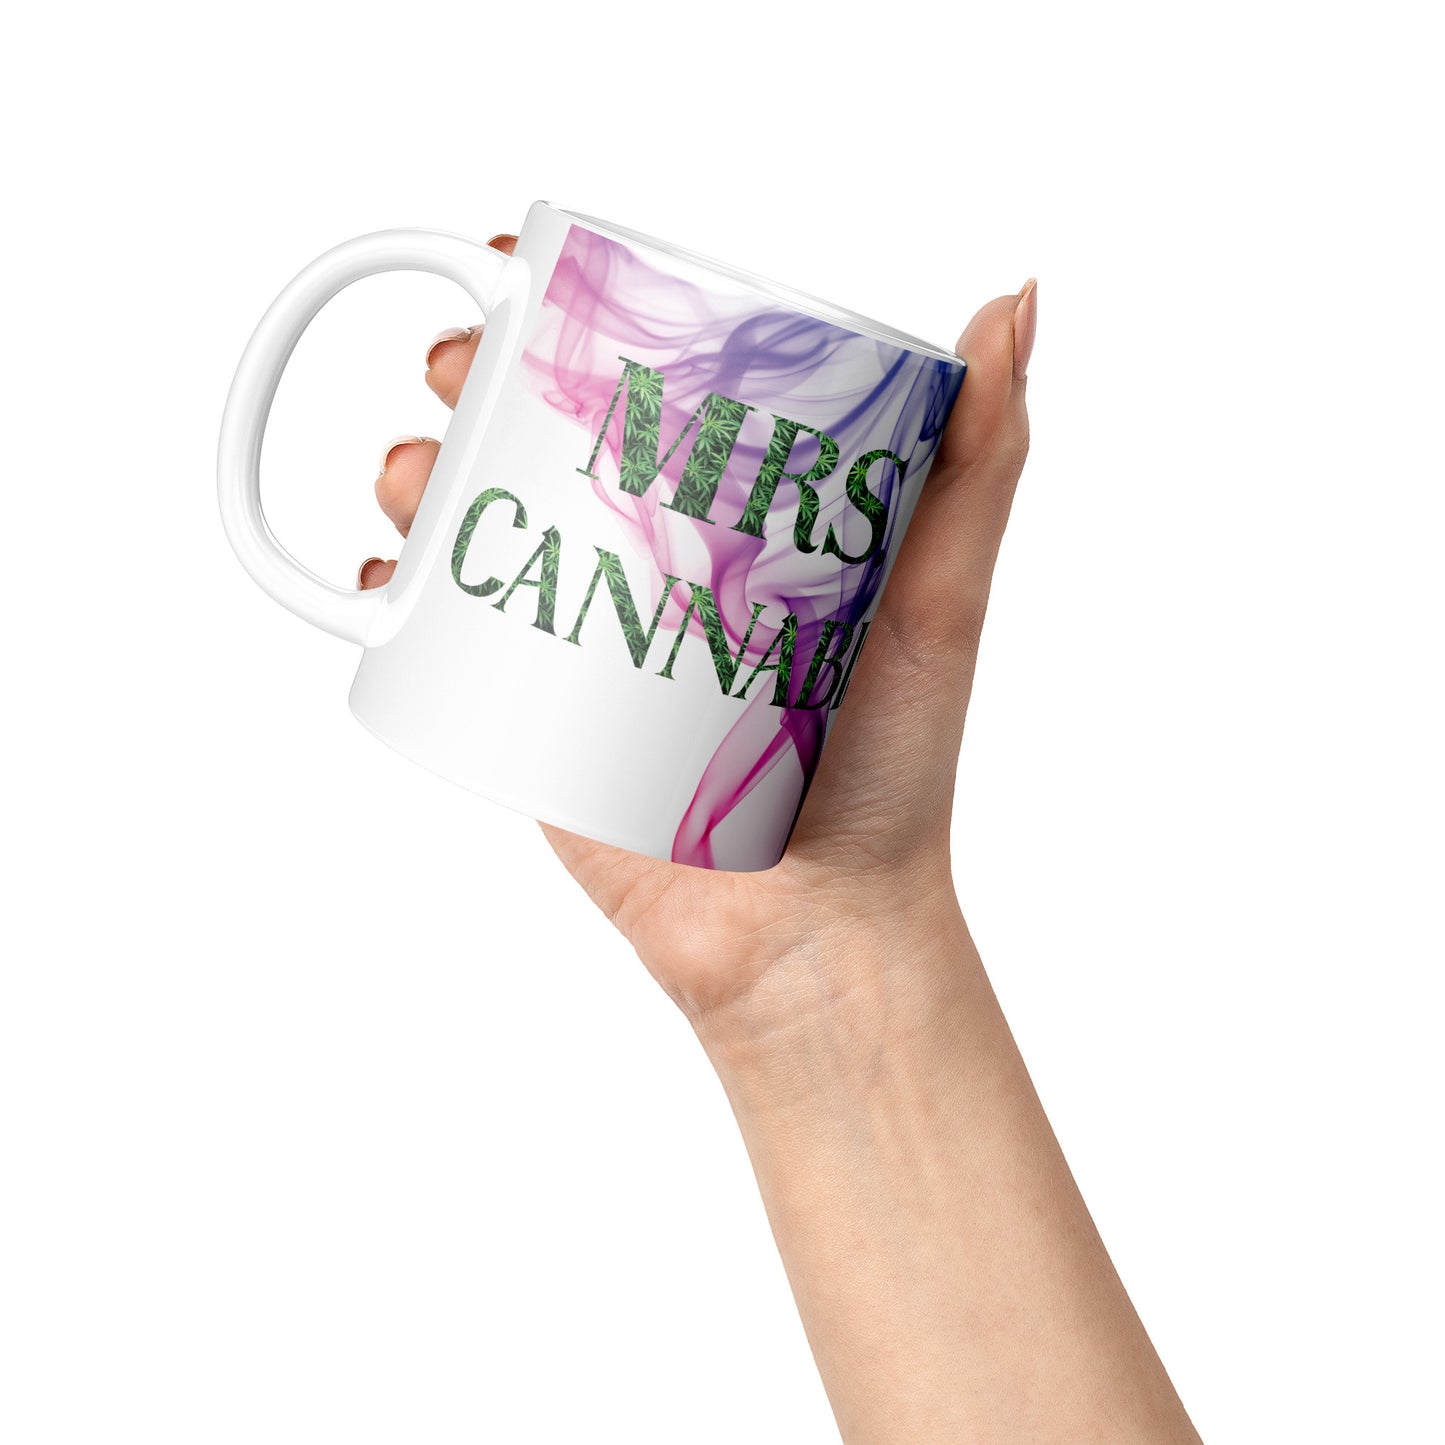 Smoking Pretty Mrs. Cannabis Mug